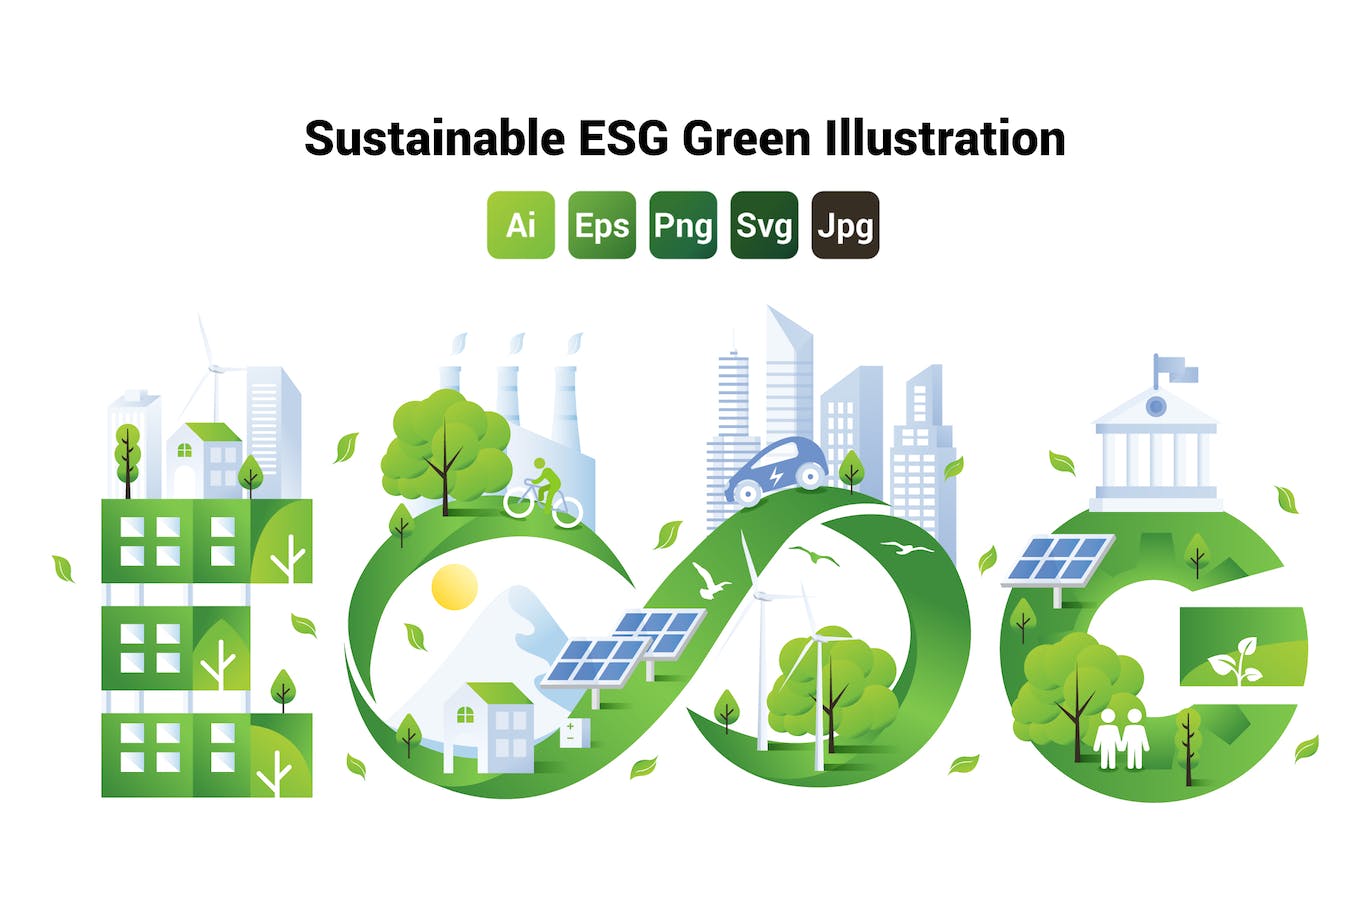 可持续发展概念ESG绿色环保插画 Sustainable ESG Green Illustration-1